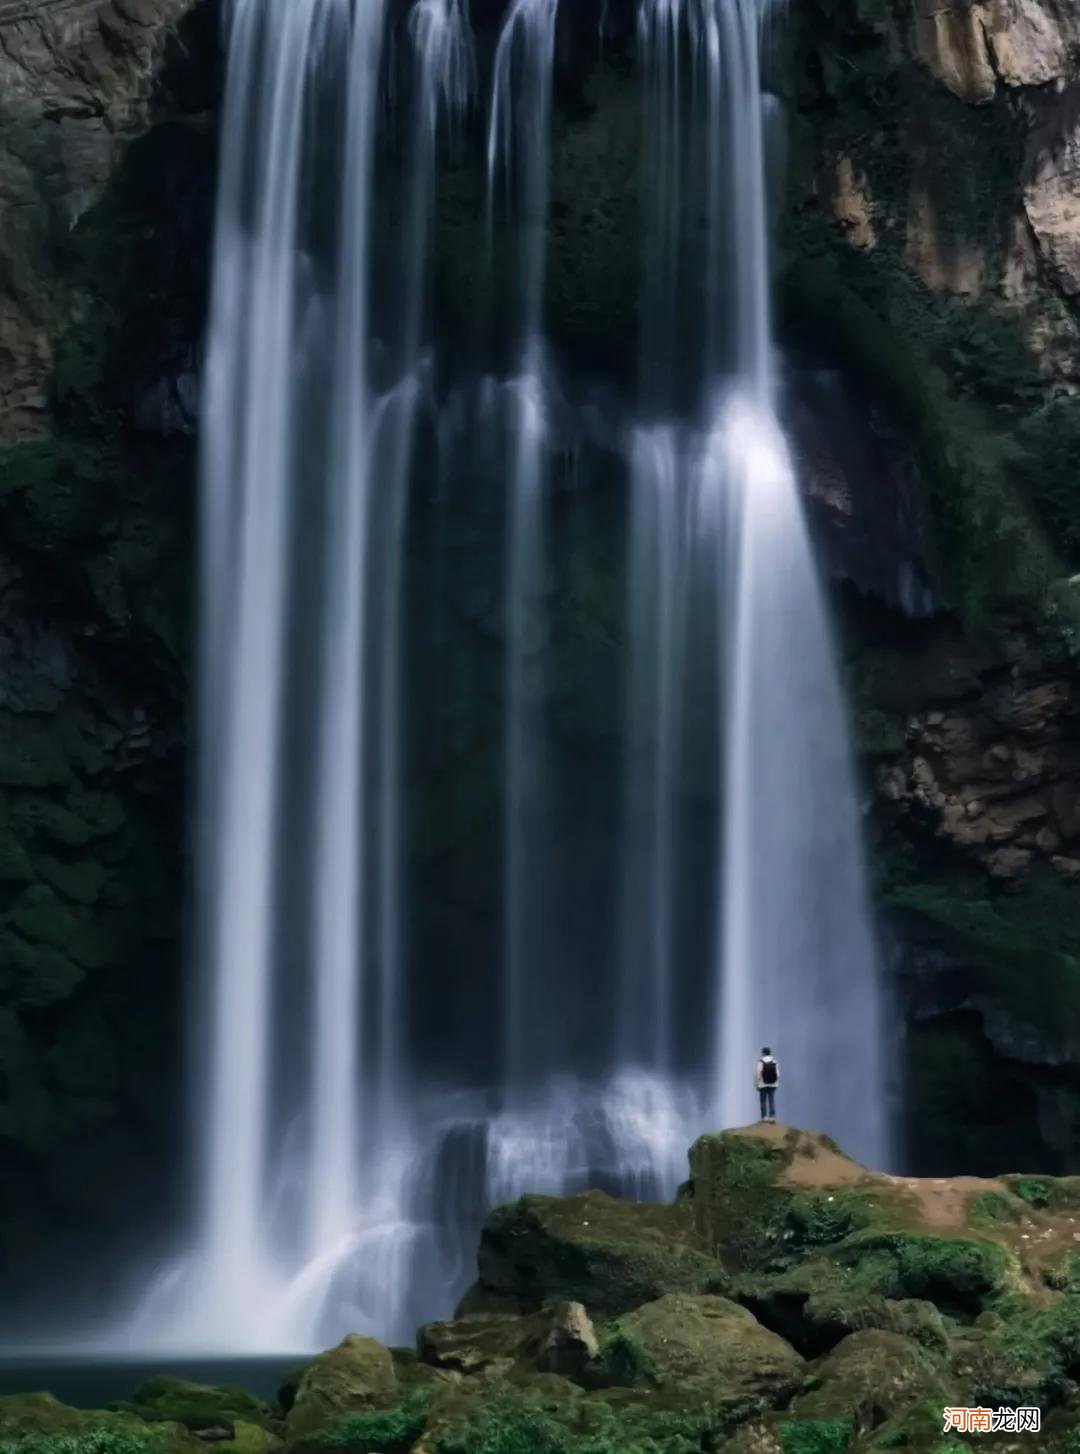 手机拍出瀑布和水流好看照片的教程 拍摄瀑布技巧